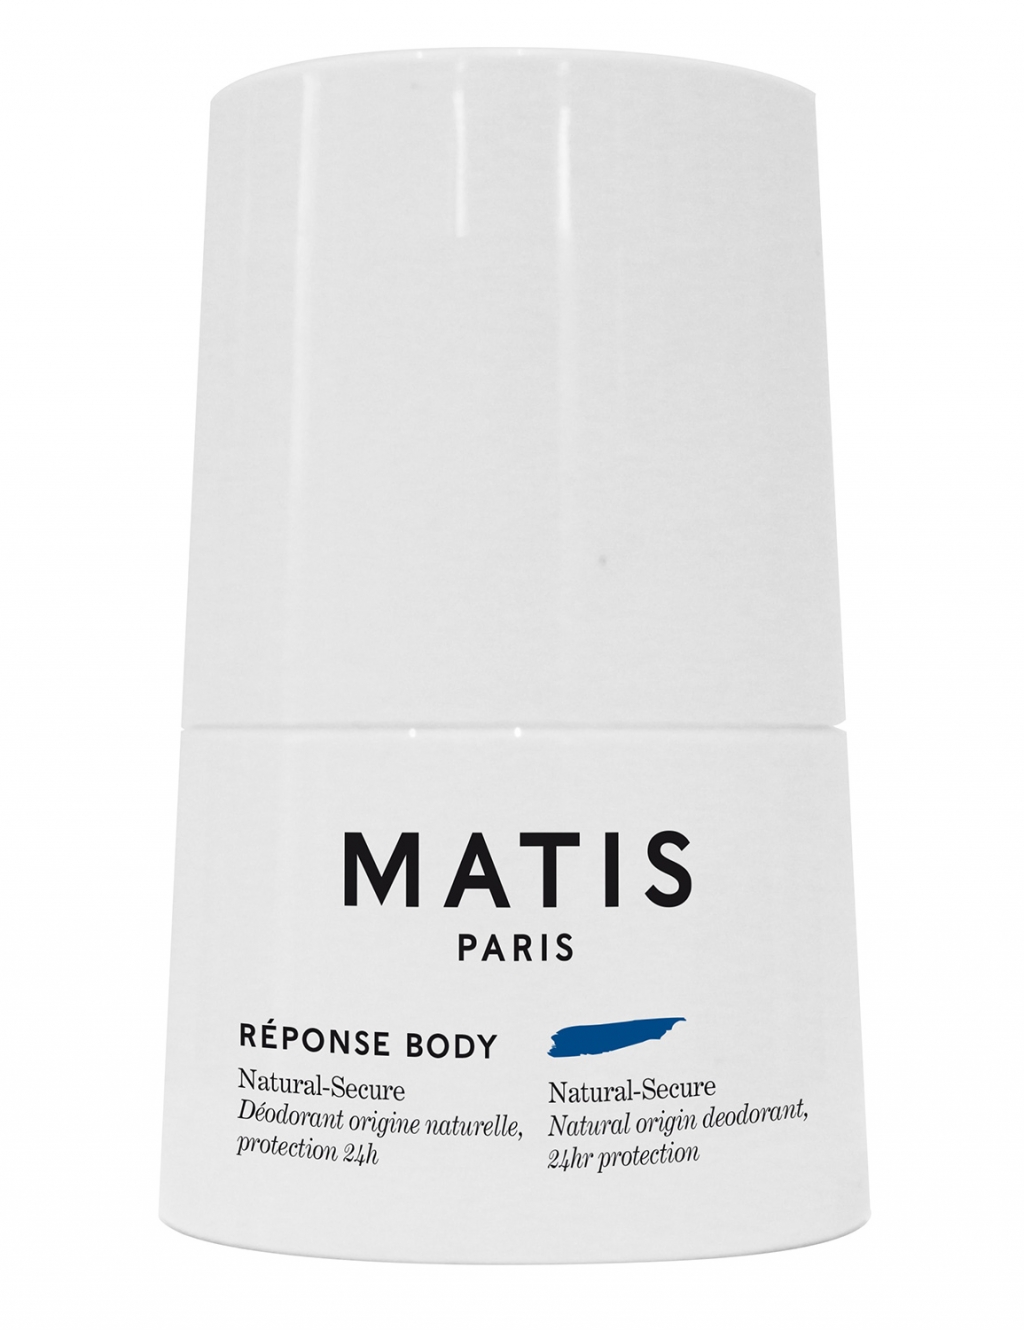 Matis Дезодорант с натуральными компонентами и с уровнем защиты 24 часа, 50 мл (Matis, Reponse body)